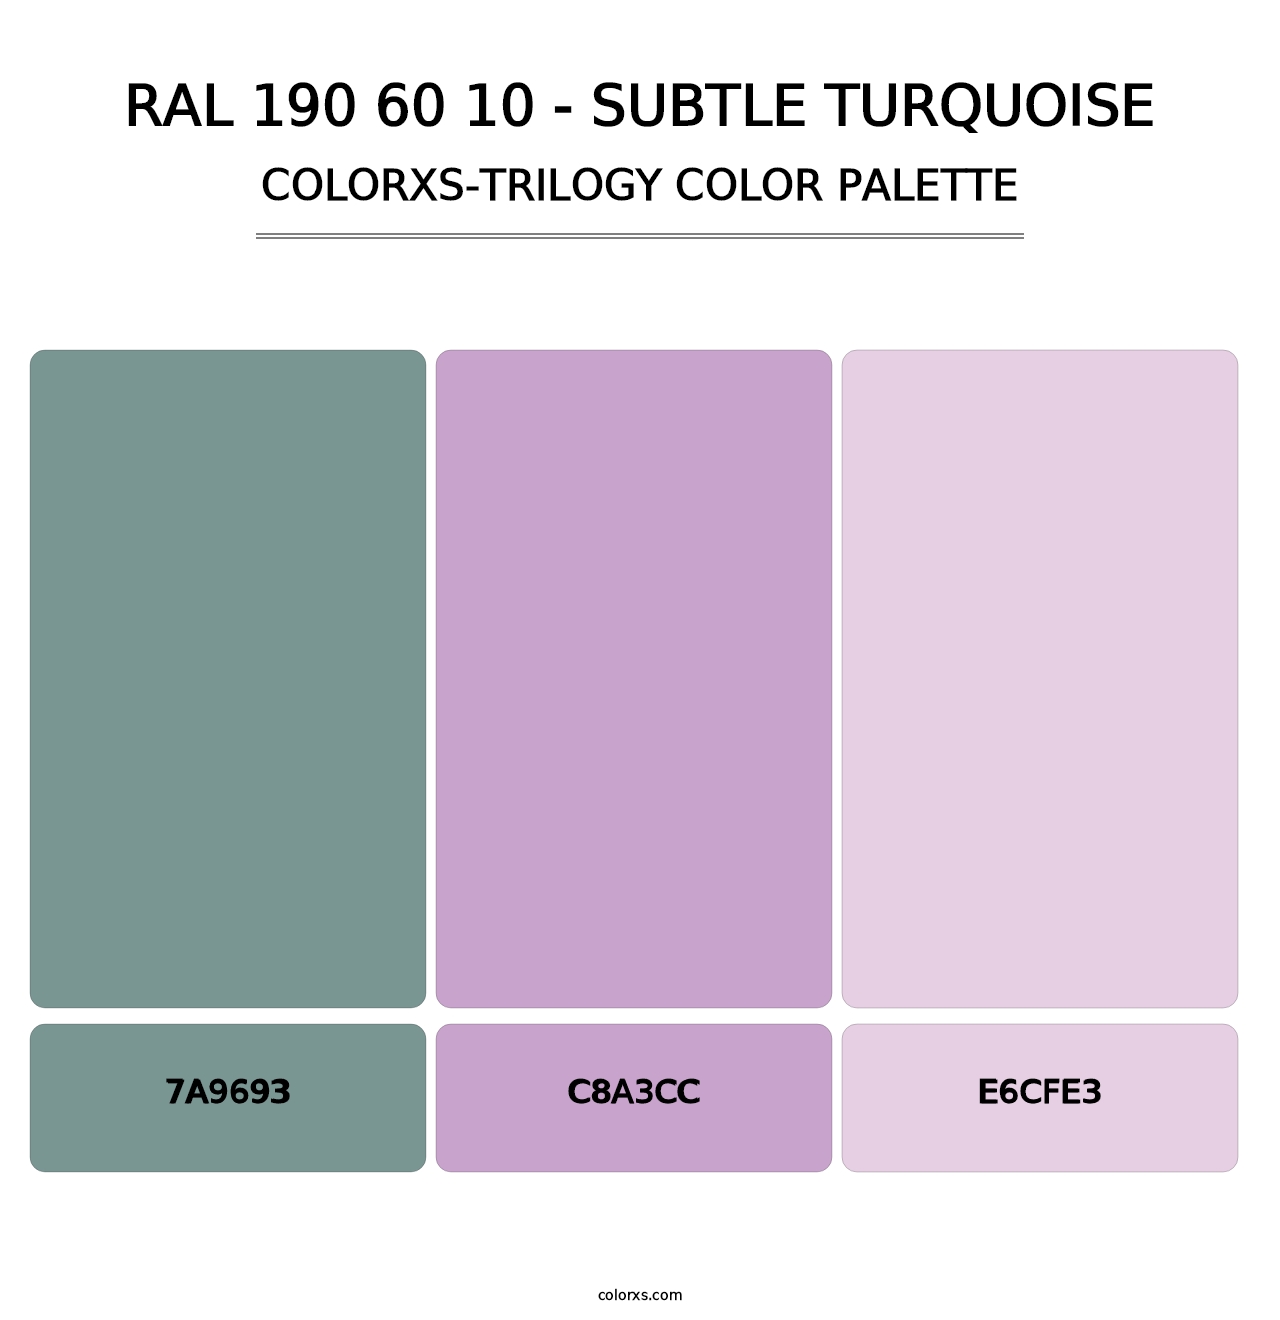 RAL 190 60 10 - Subtle Turquoise - Colorxs Trilogy Palette